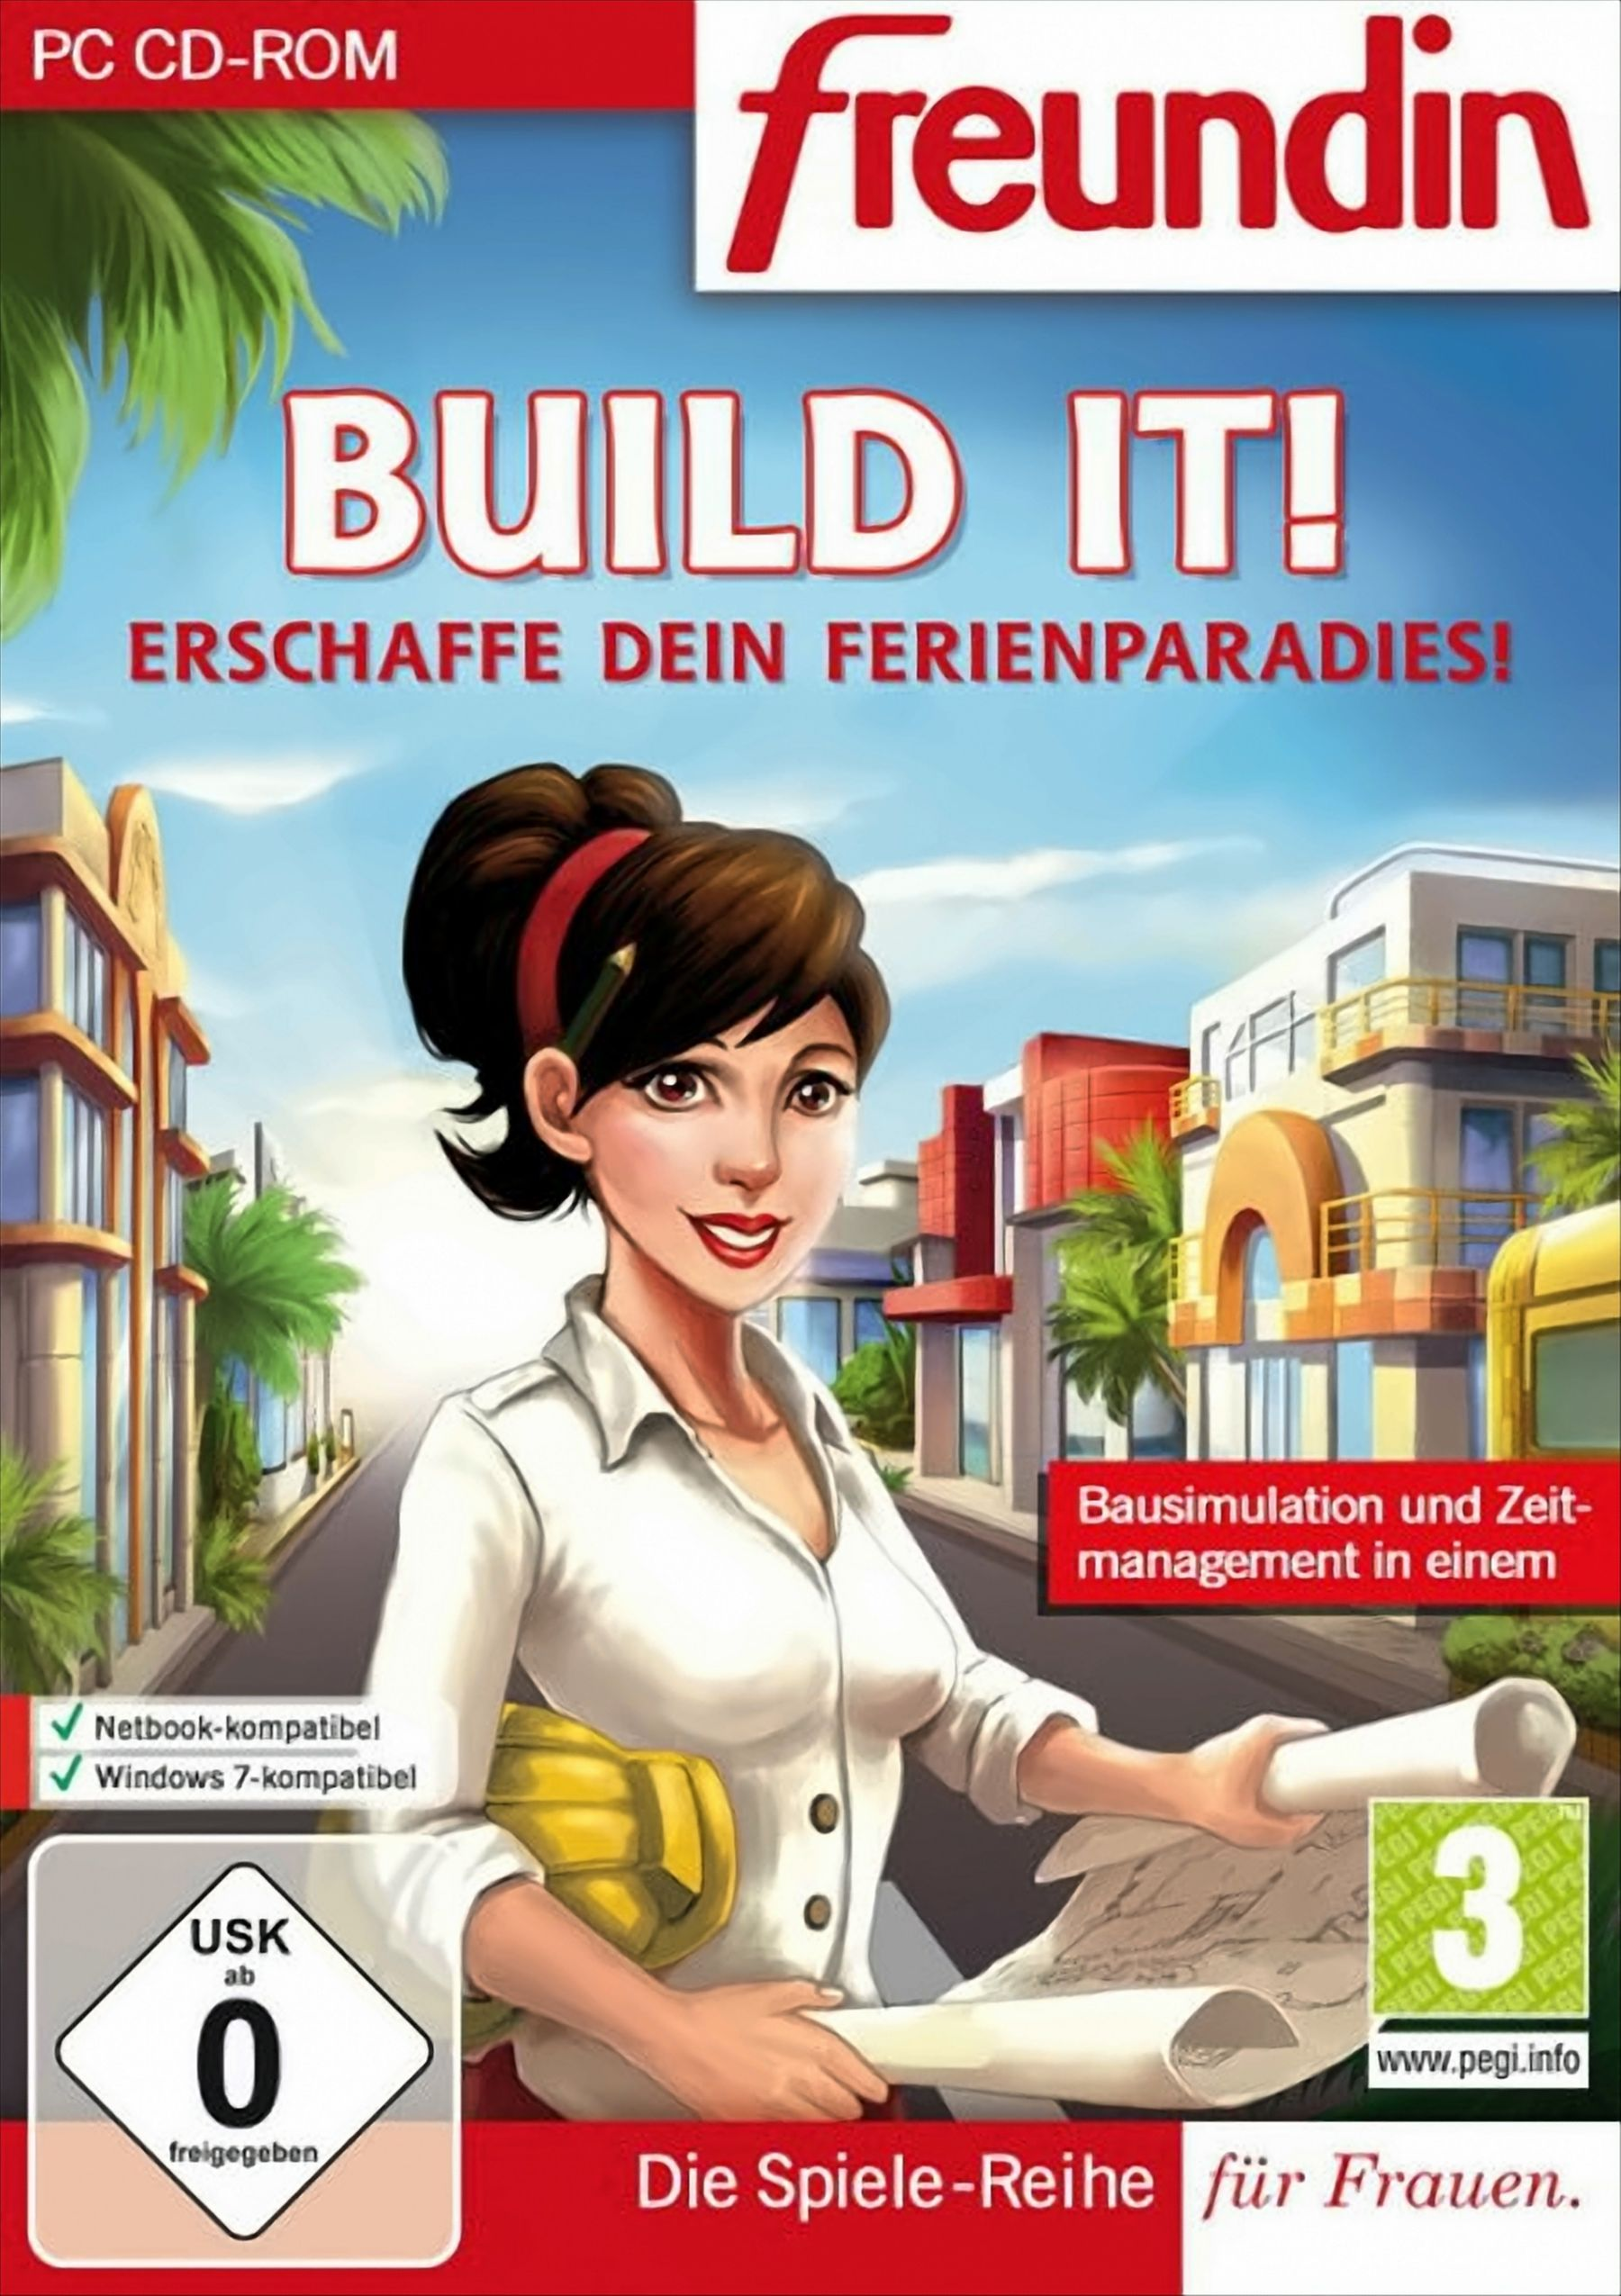 [PC] - Build - dein It! Erschaffe Ferienparadies